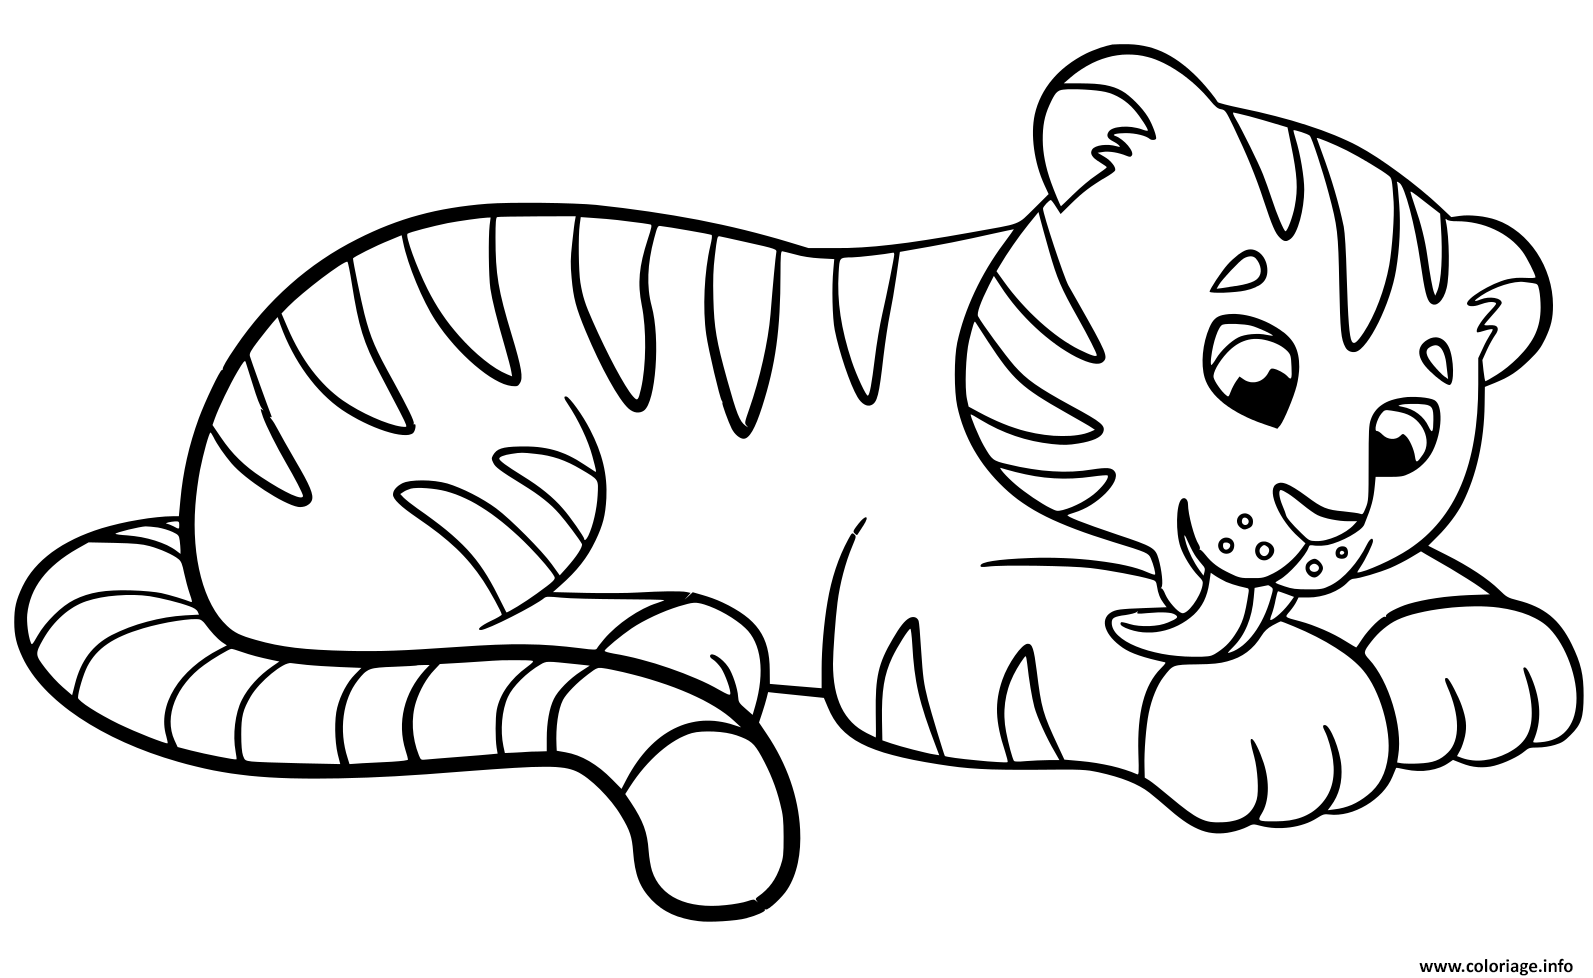 Coloriage Tigre Bebe Pour Enfants Jecolorie Com